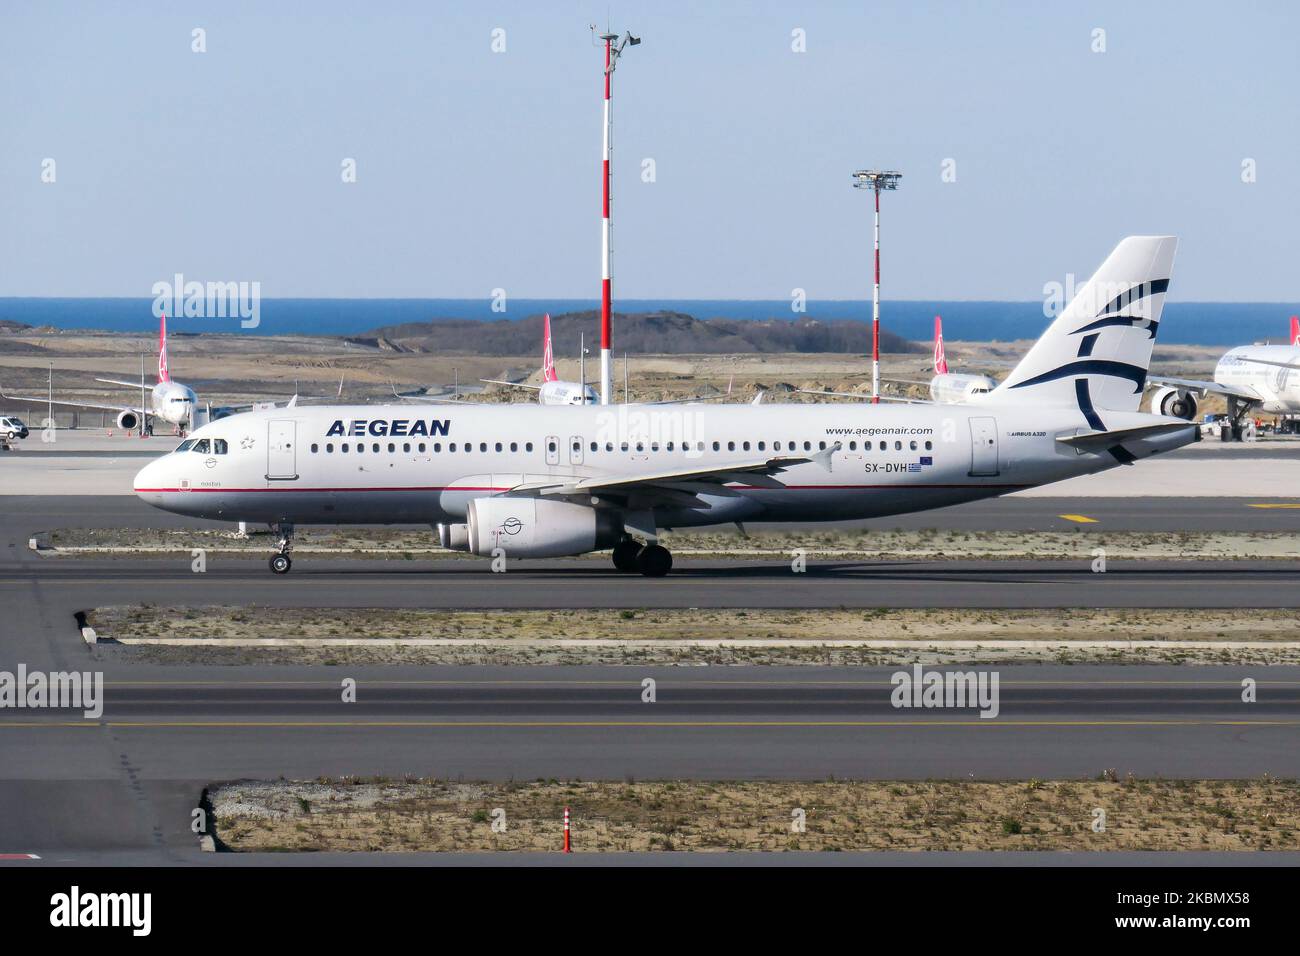 Aegean Airlines Airbus A320 avion commercial vu en train de rouler à  Istanbul New Airport LTFM IST en Turquie pendant une journée ensoleillée.  L'Airbus A320-232 à corps étroit possède l'enregistrement SX-DVH et